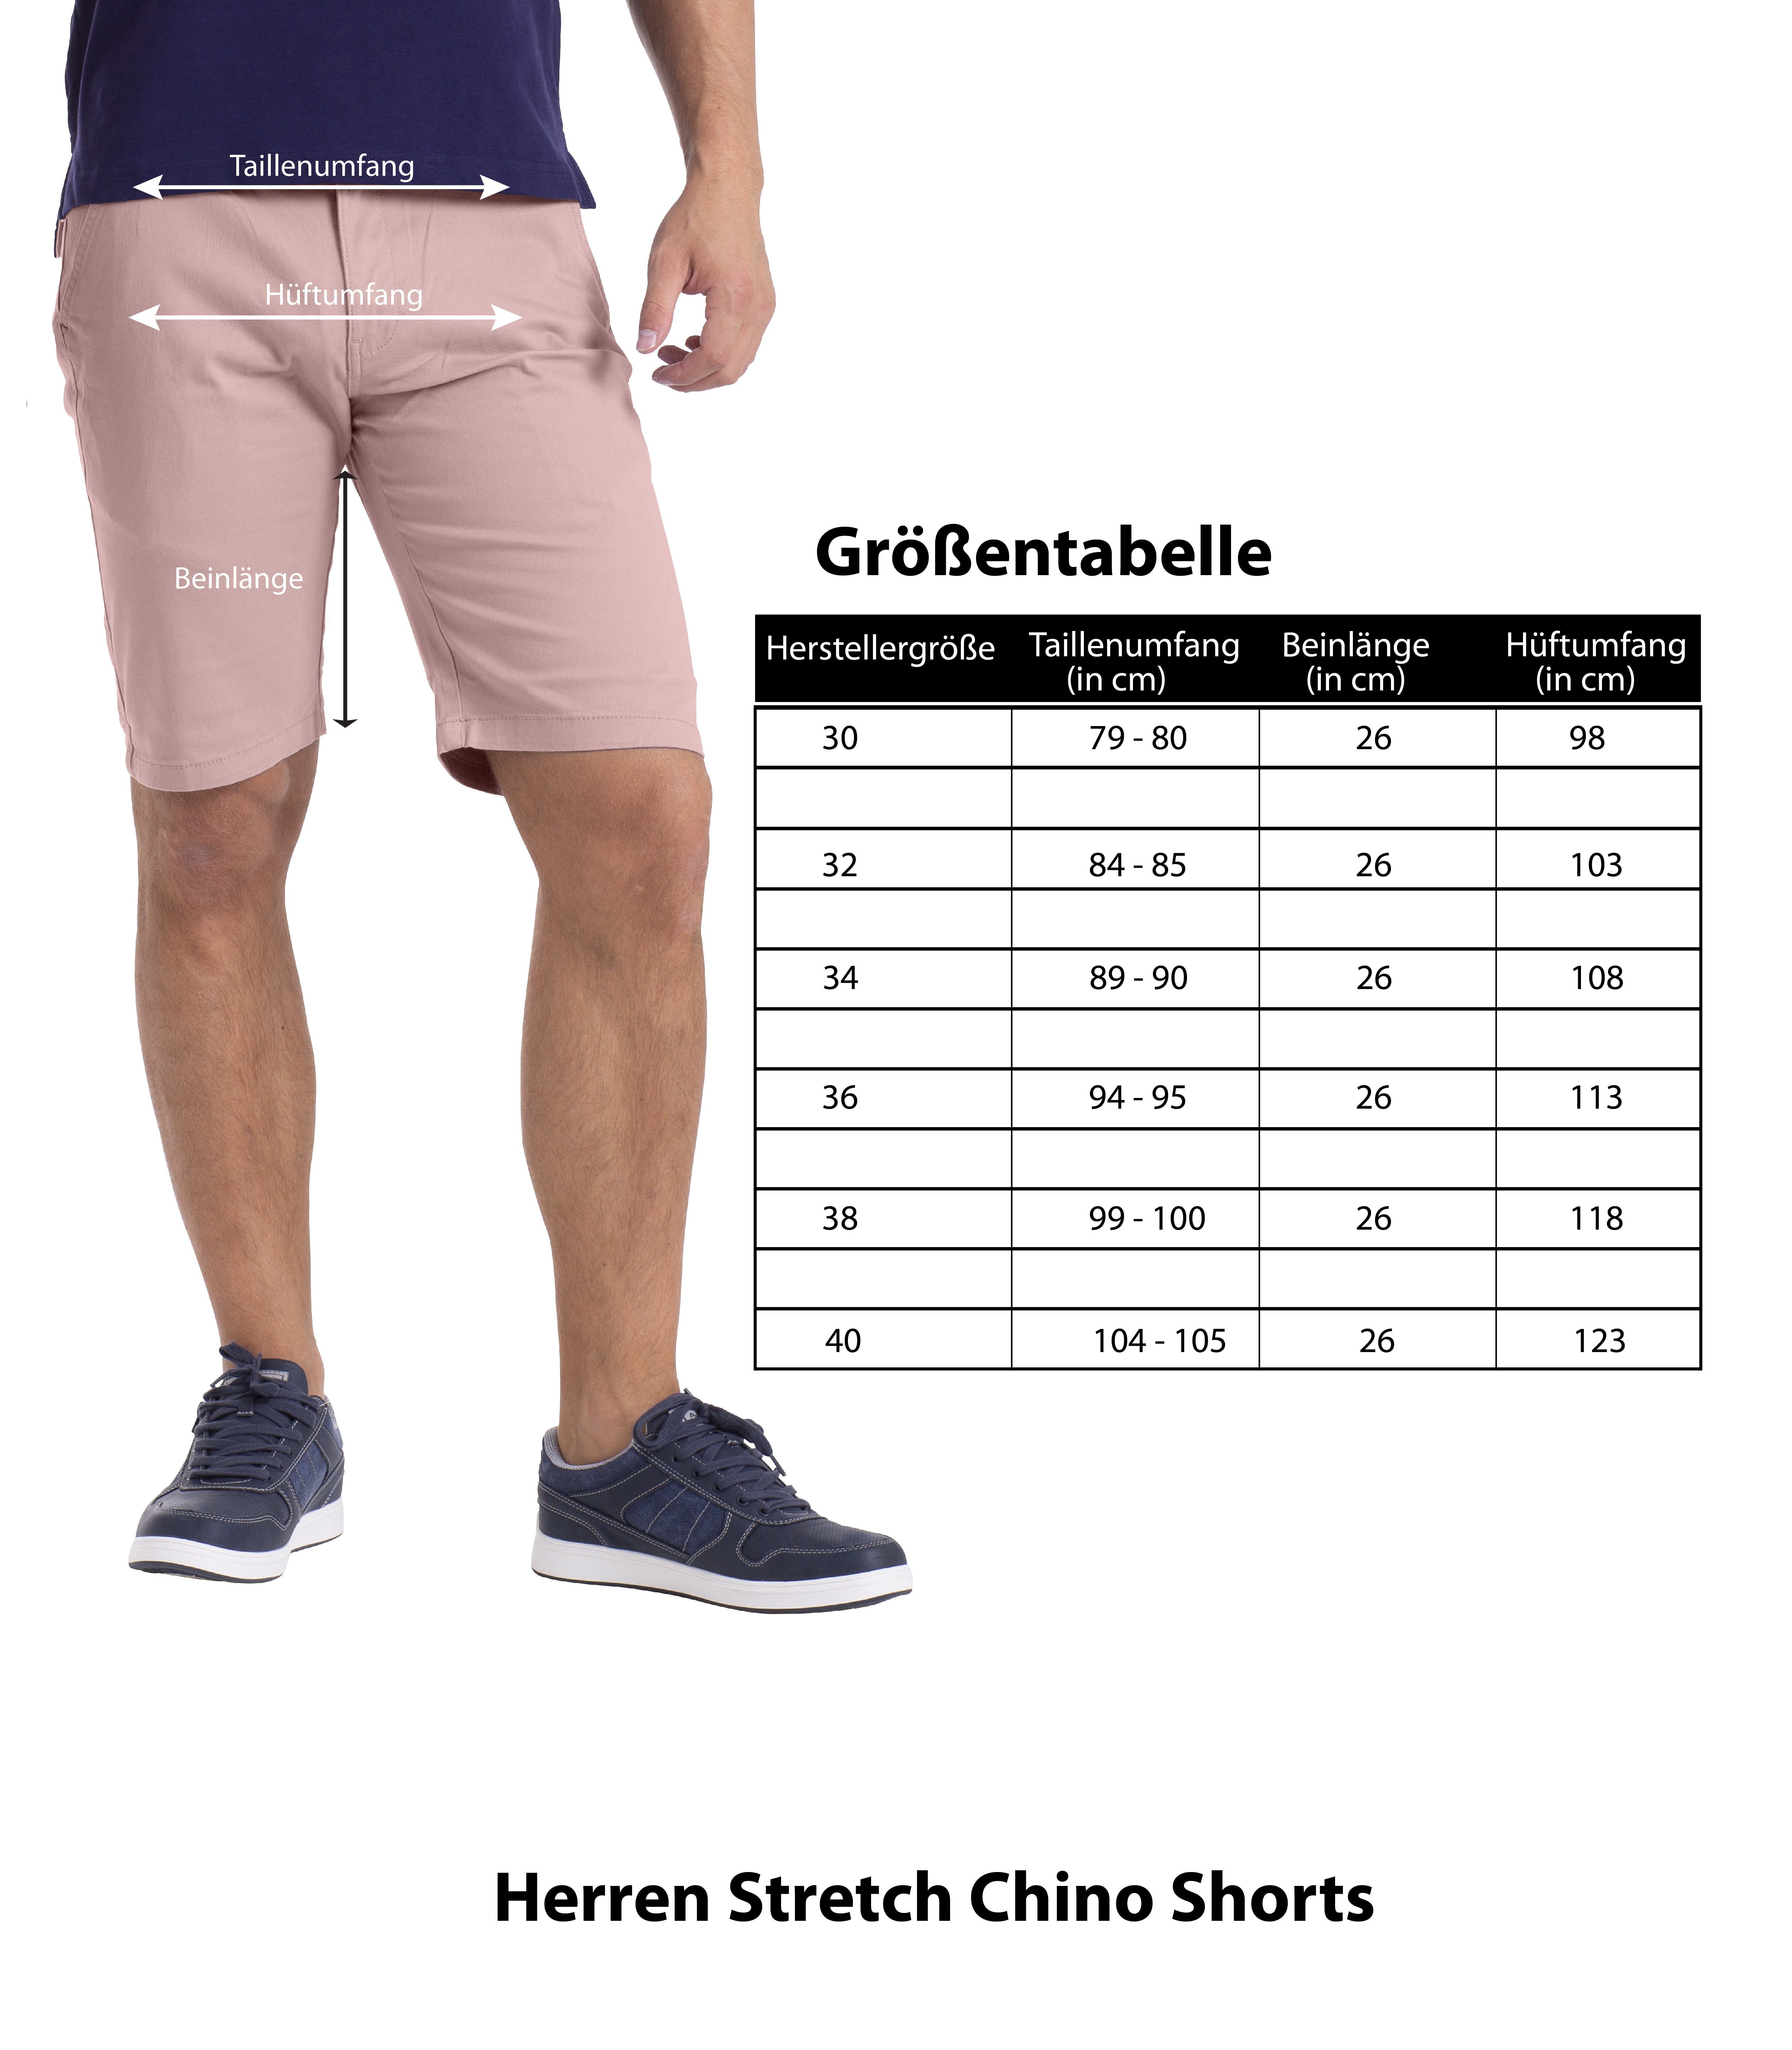 BlauerHafen Chinoshorts Shorts Bermuda Chino Fit Stretch Herren Hellrosa Strecken-Baumwolle Slim Hose